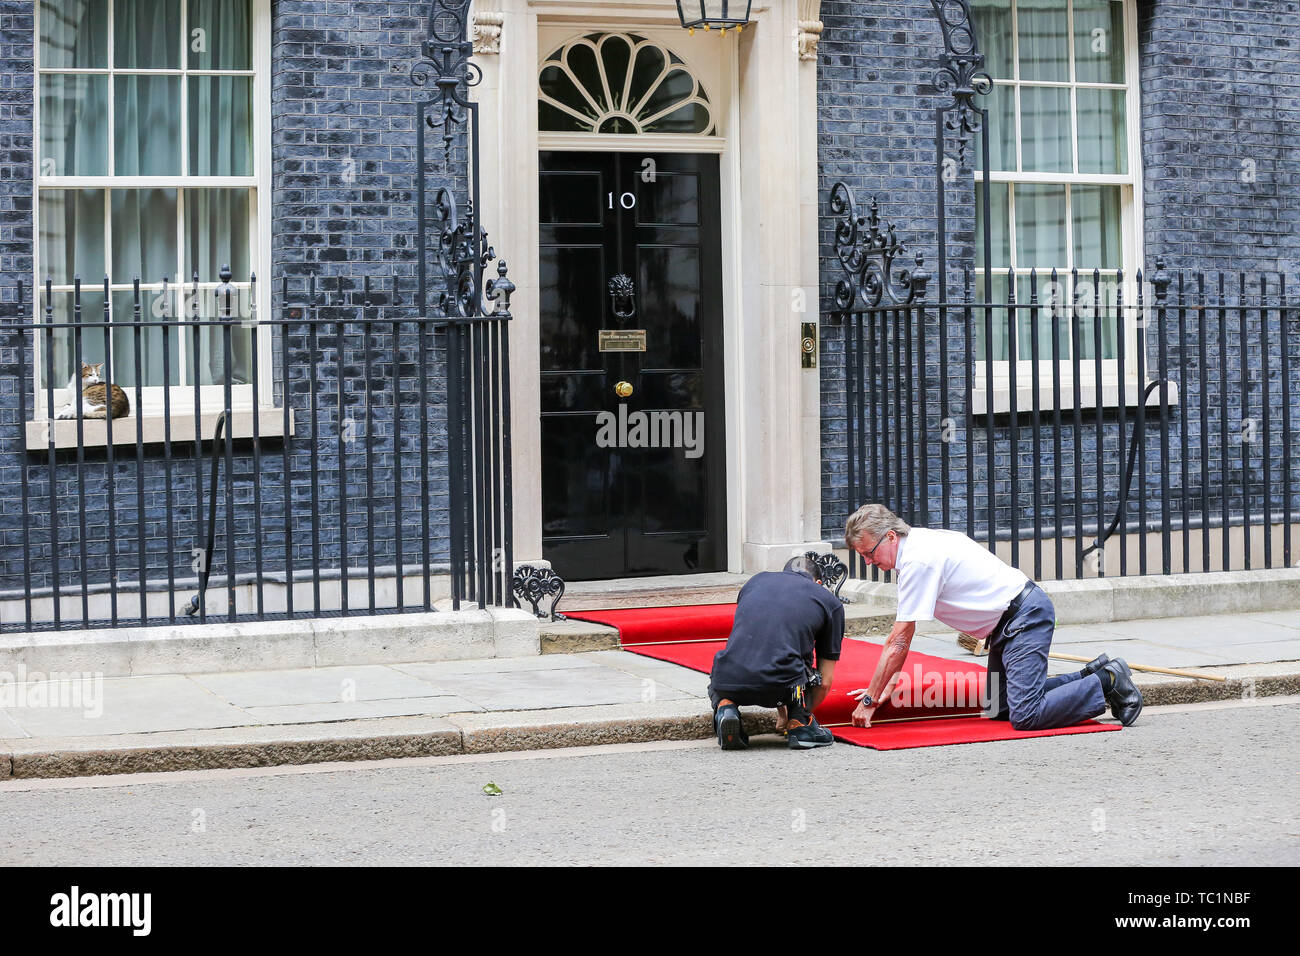 Handwerker legen Sie einen roten Teppich für den US-Präsidenten Donald Trump und First Lady Melania Trump Besuch in Downing Street am zweiten Tag Ihrer dreitägigen Staatsbesuch in Großbritannien. Larry, der 10 Downing Street cat und Chief Mouser des Cabinet Office schläft auf der Fensterbank. Stockfoto